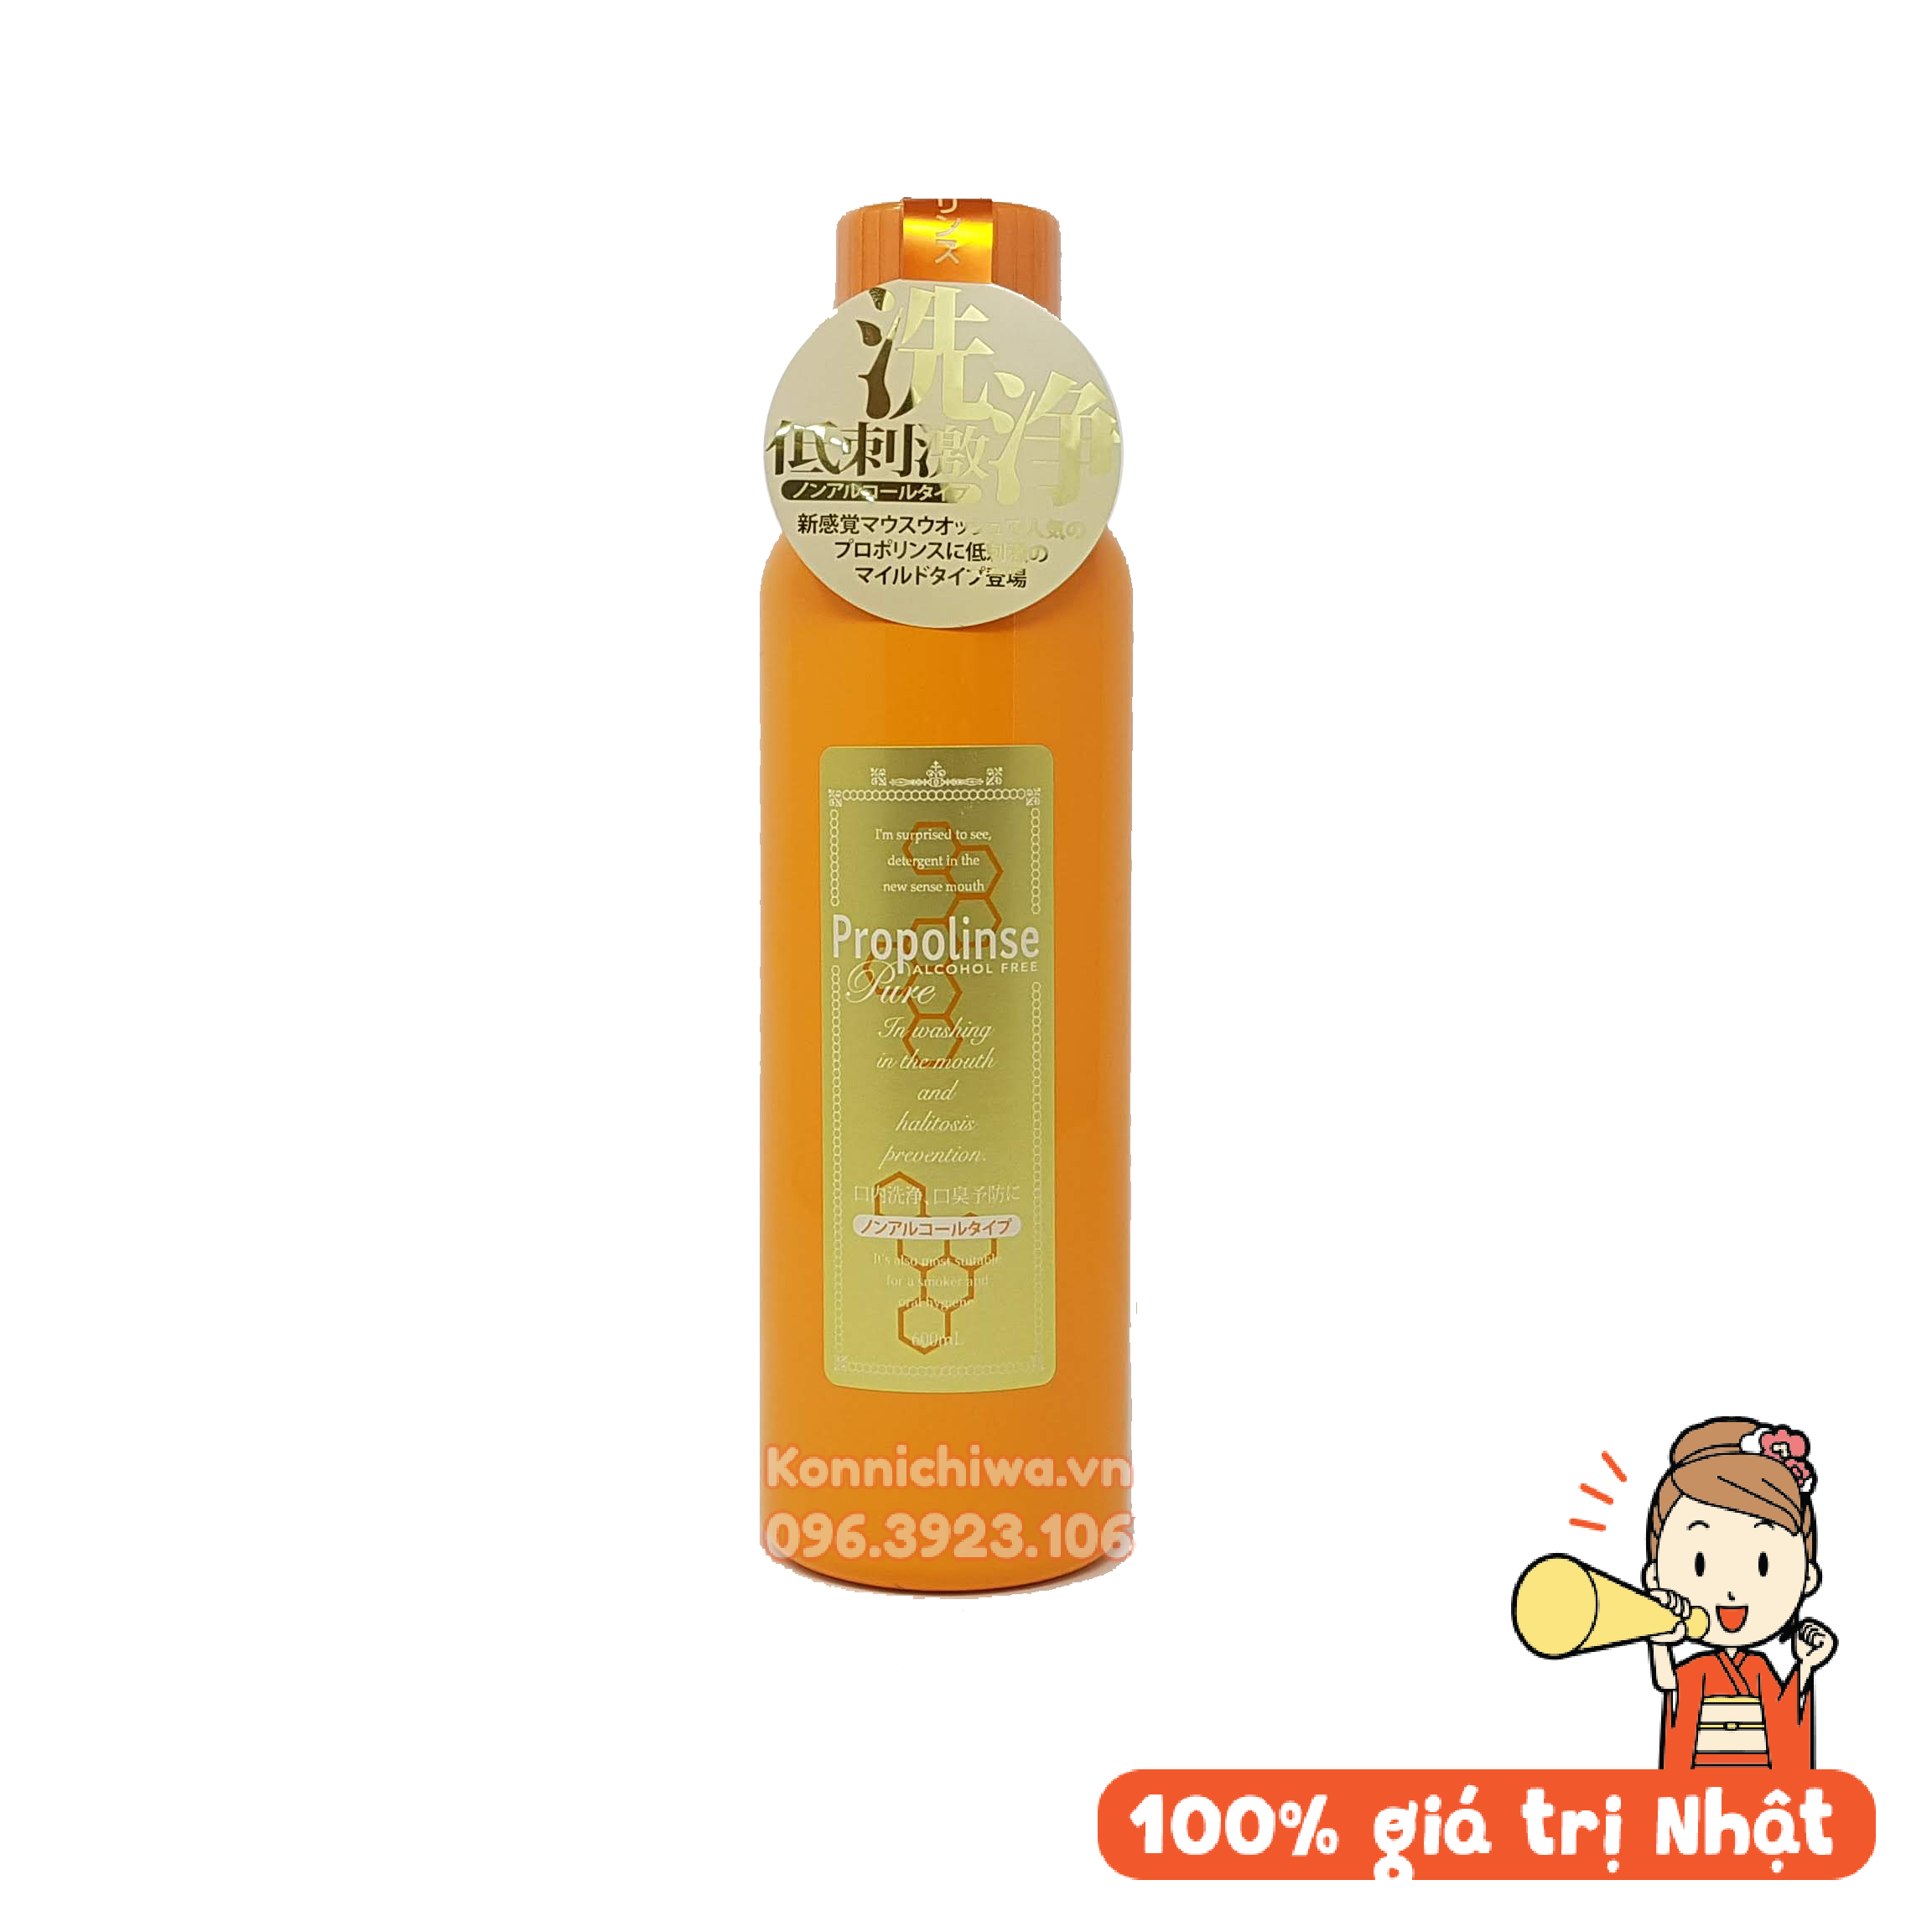 Nước súc miệng màu vàng cam Propolinse 600ml hàng Nội địa Nhật Bản